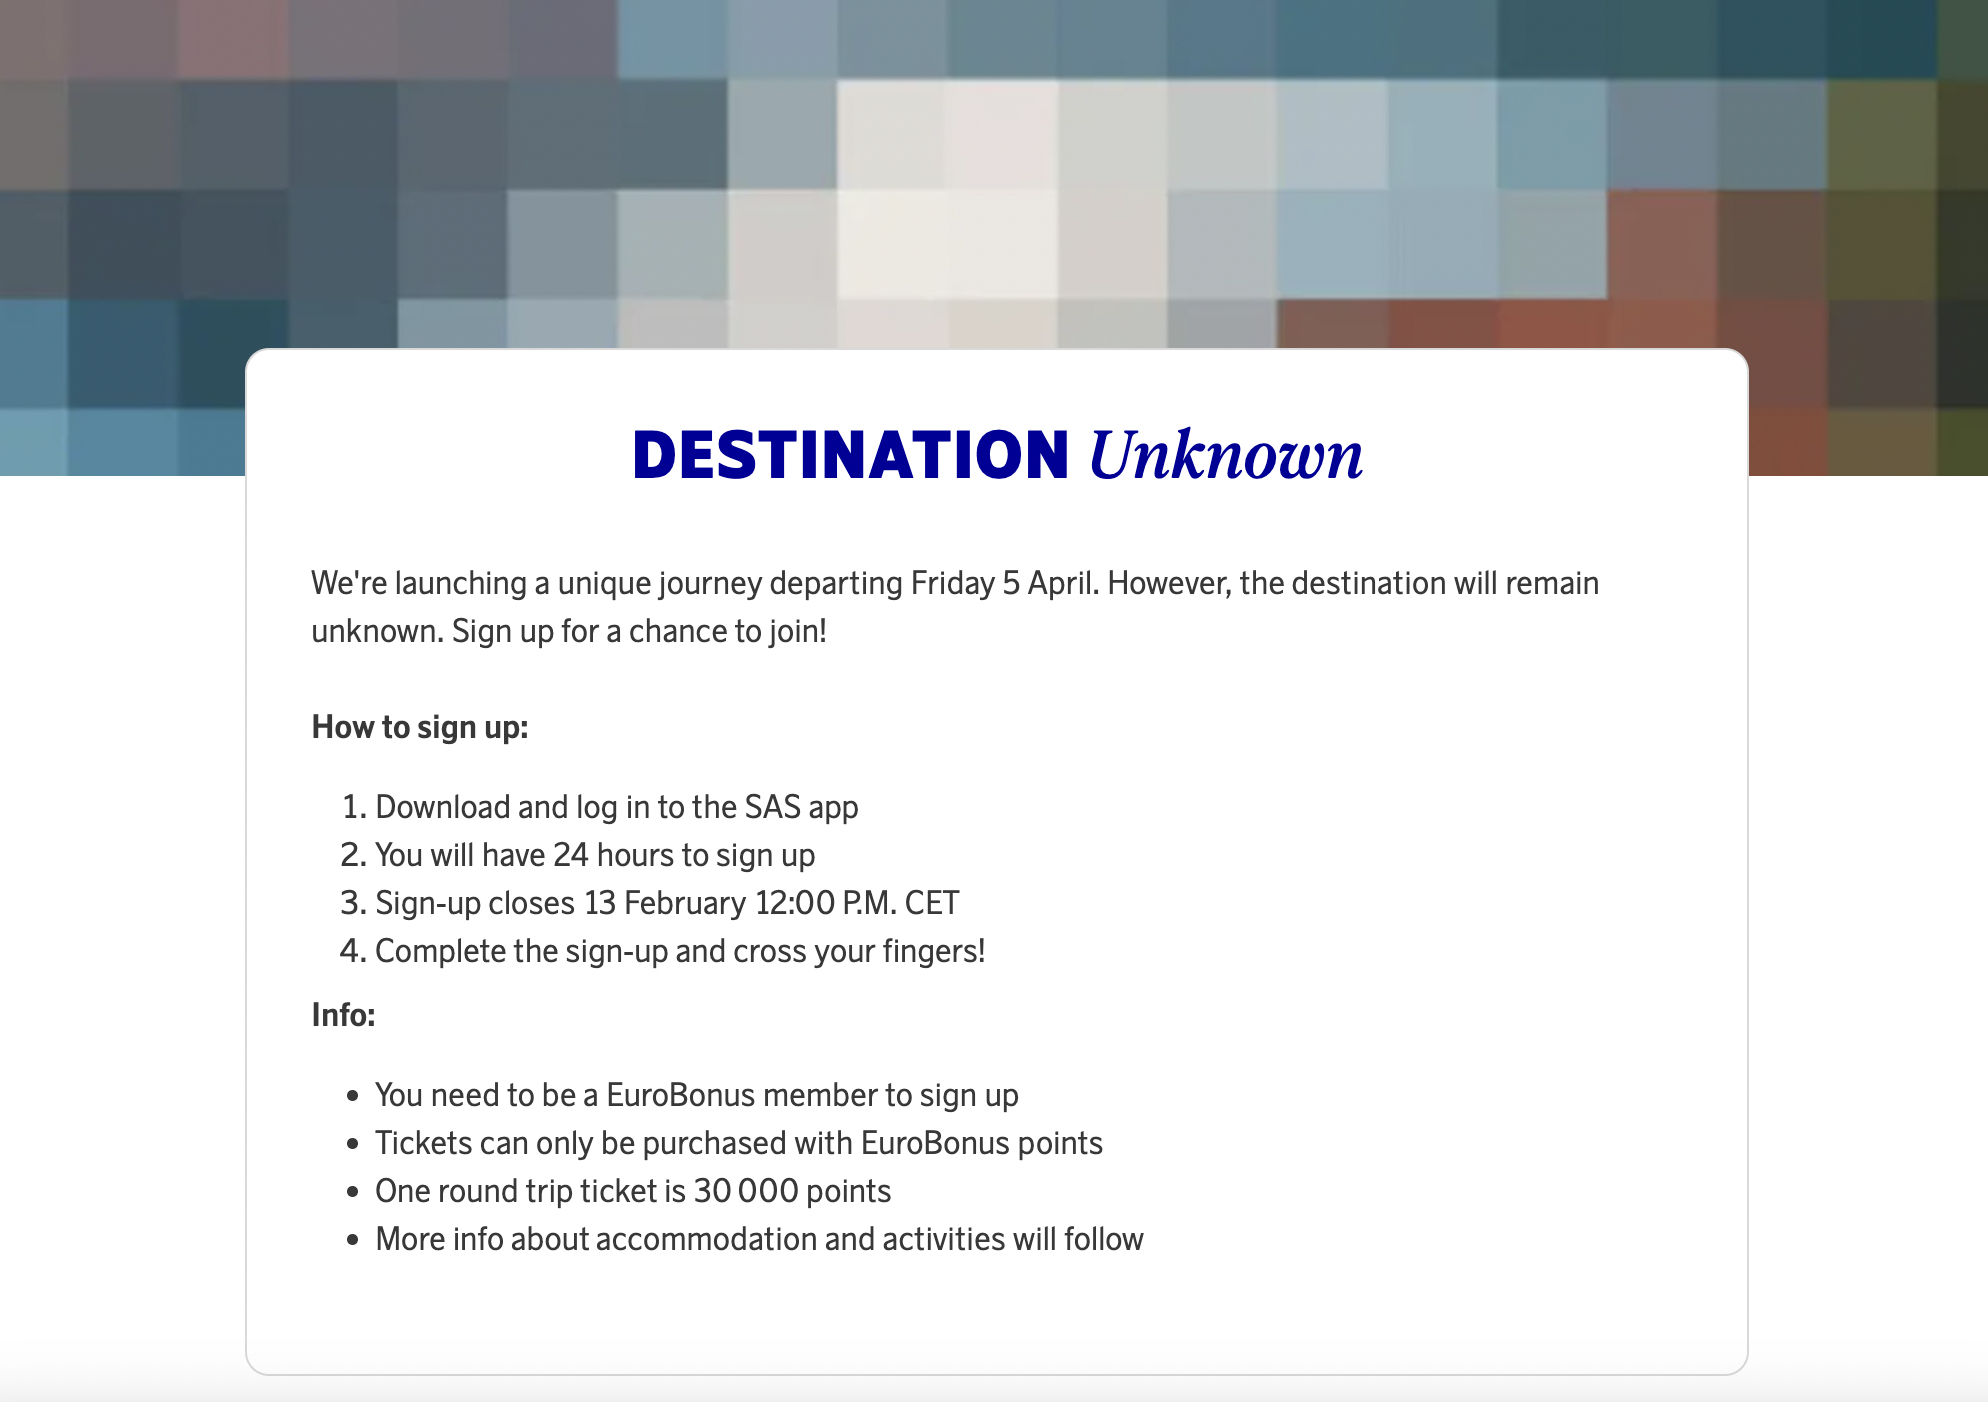 SAS Destination Unknown